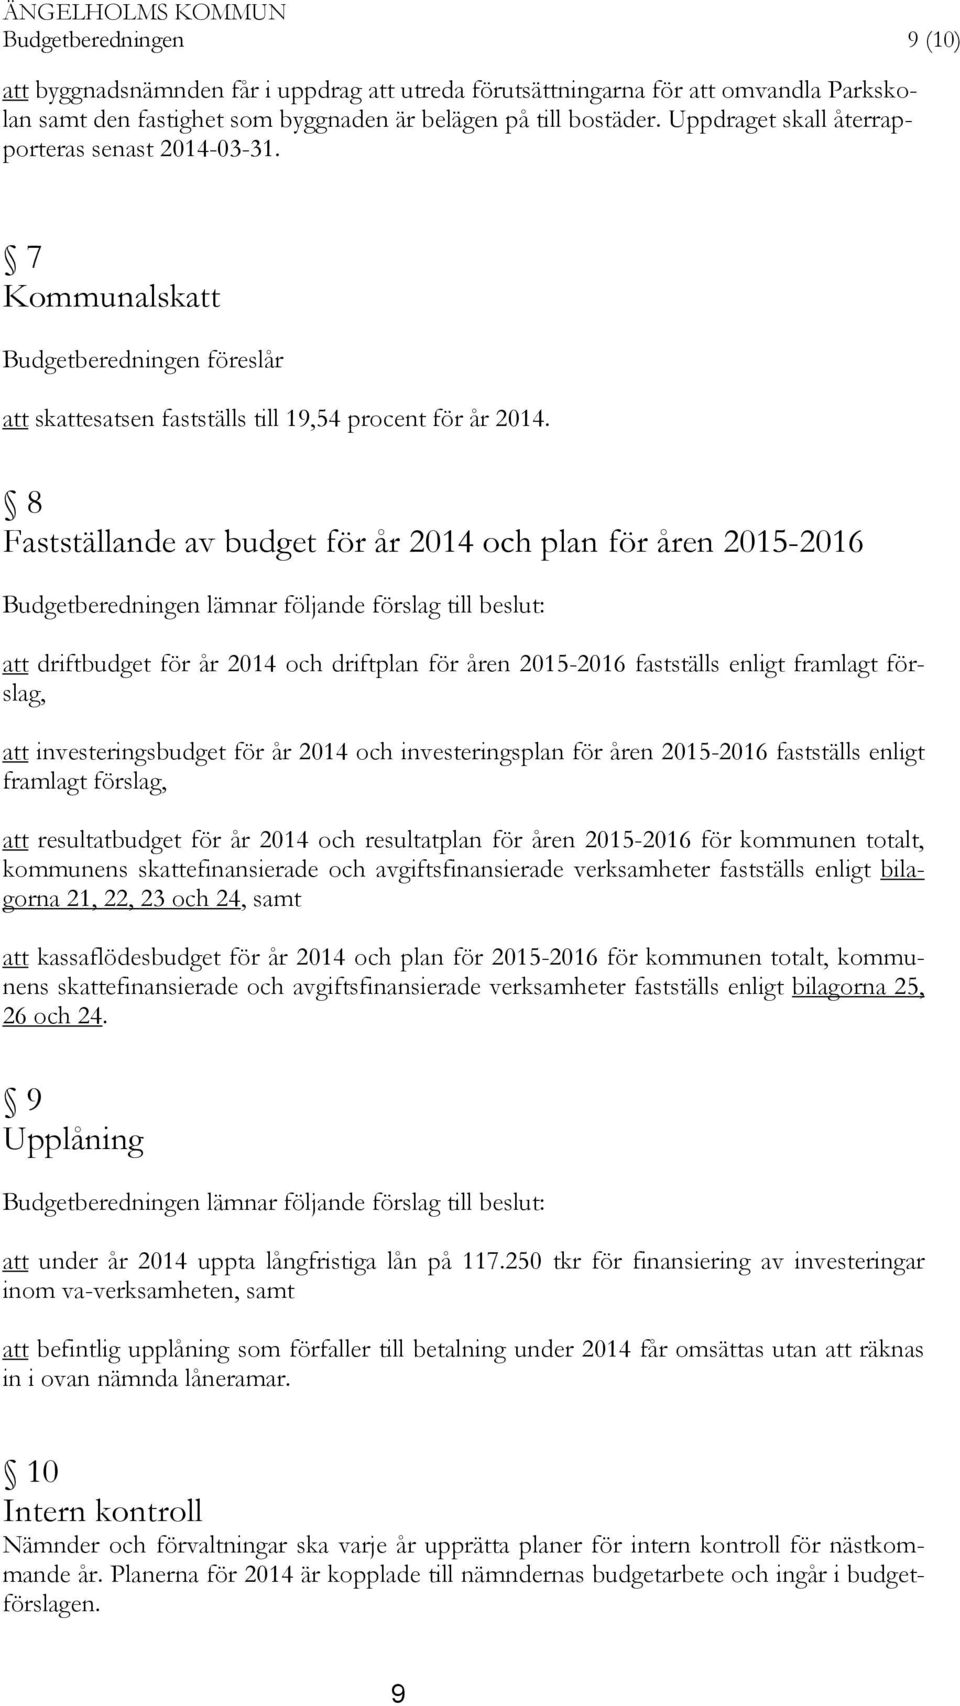 8 Fastställande av budget för år 2014 och plan för åren 2015-2016 Budgetberedningen lämnar följande förslag till beslut: att driftbudget för år 2014 och driftplan för åren 2015-2016 fastställs enligt